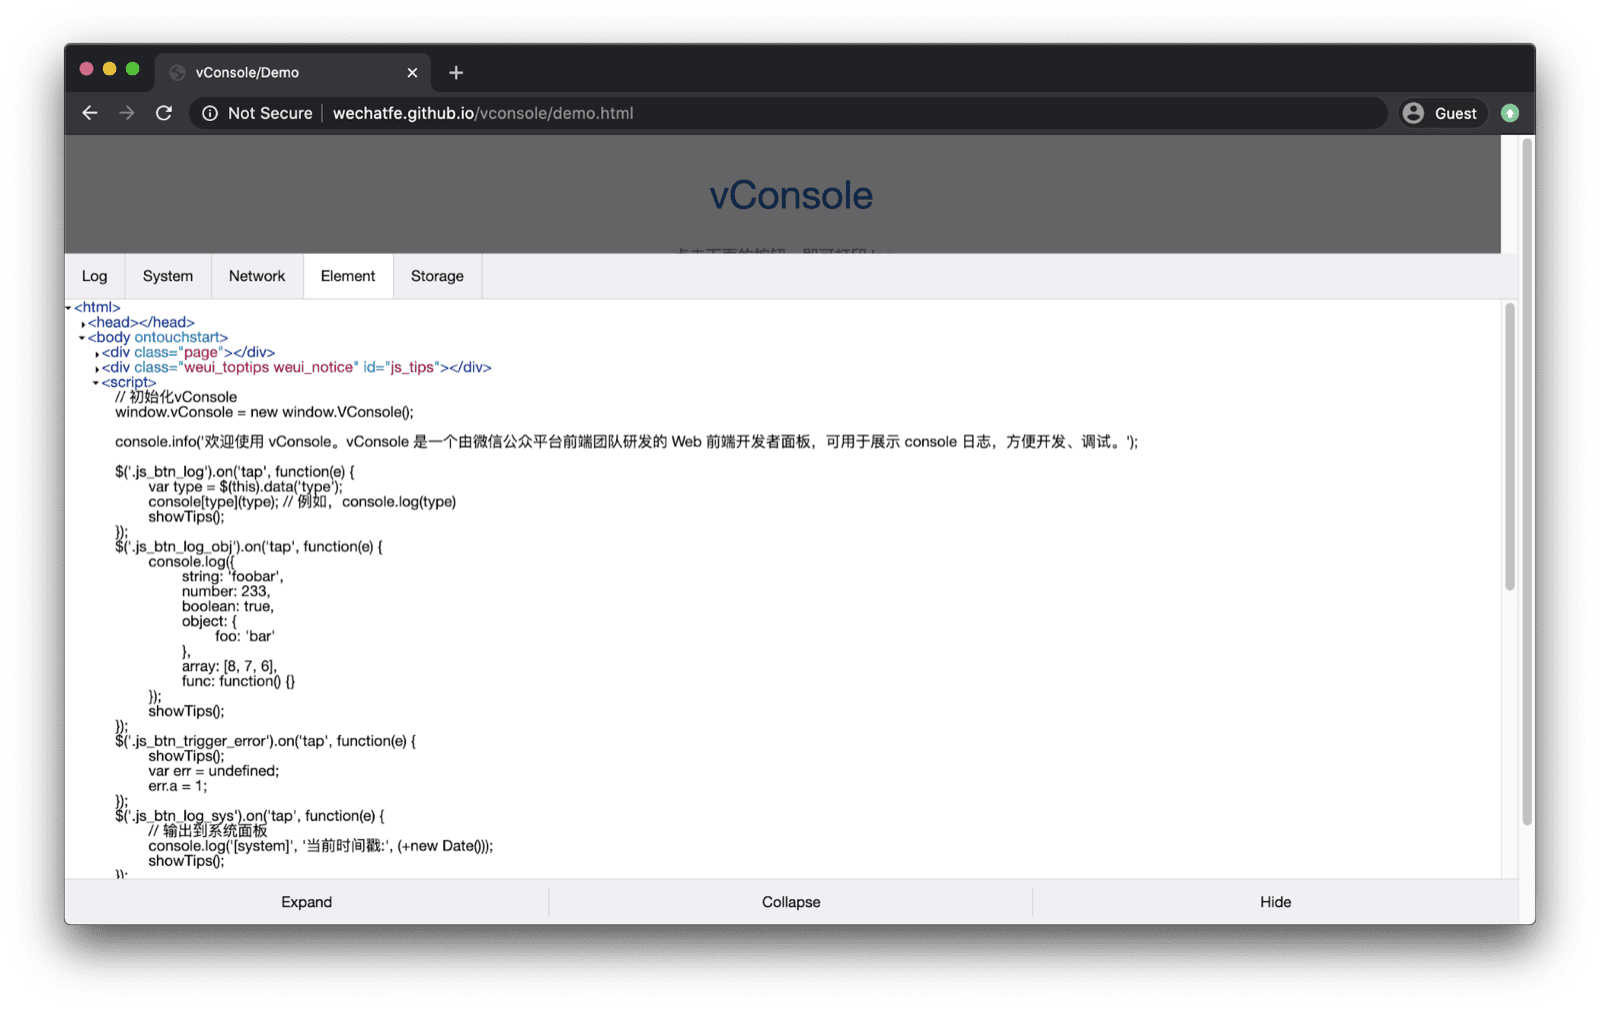 تطبيق vConsole التجريبي. يفتح vConsole في الجزء السفلي ويتضمّن علامات تبويب للسجلّات والنظام والشبكة والعناصر ومساحة التخزين.